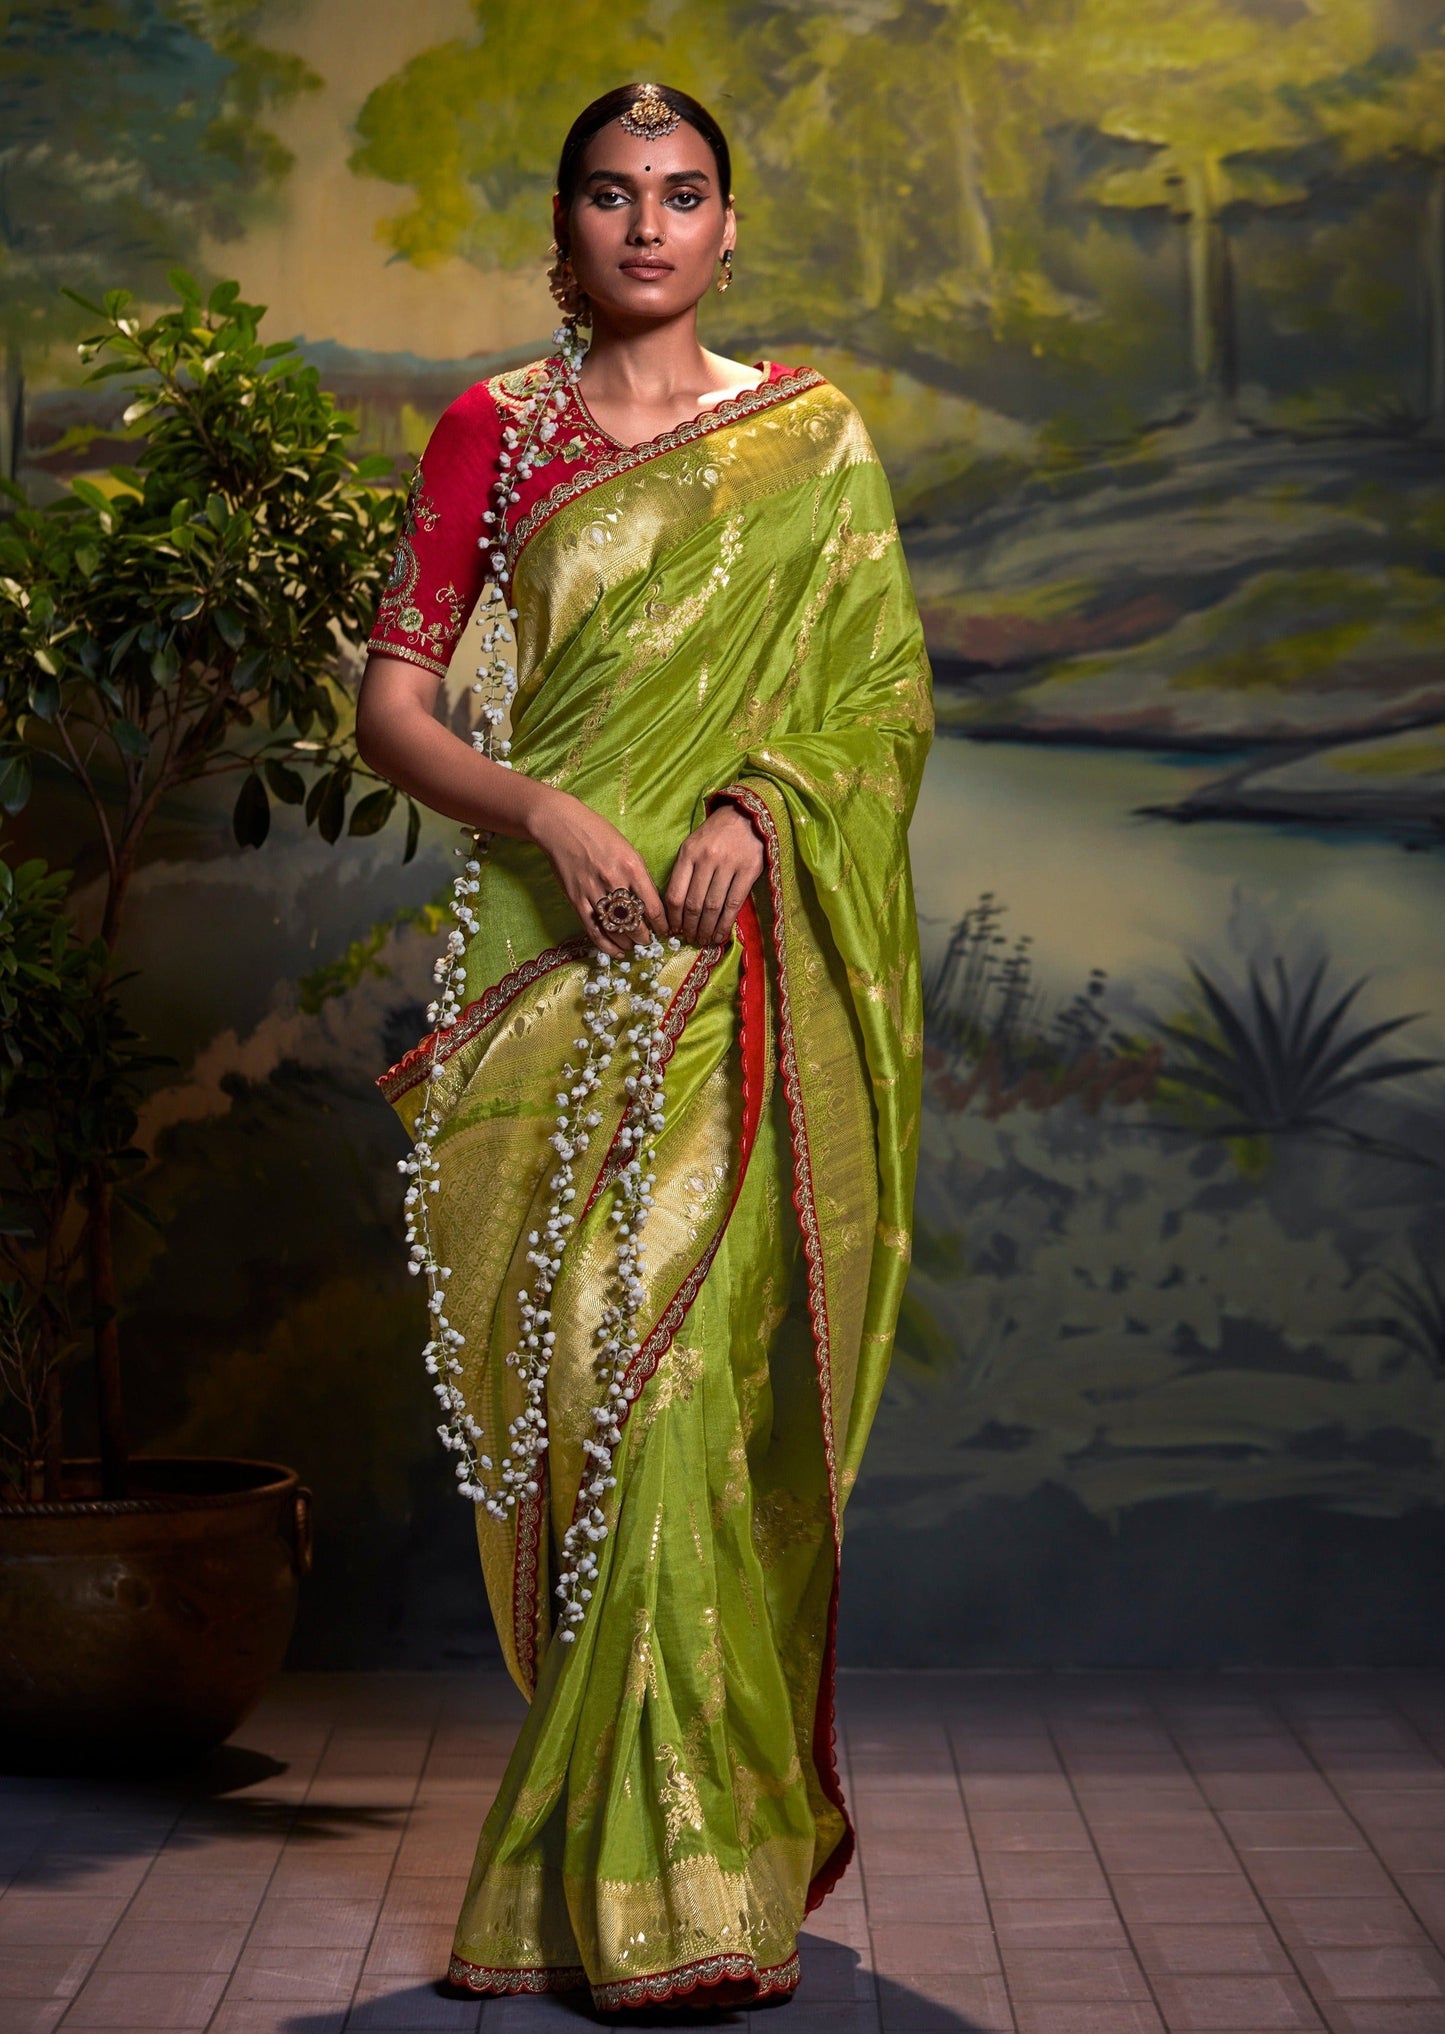 Handloom banarasi dola silk sarees online.